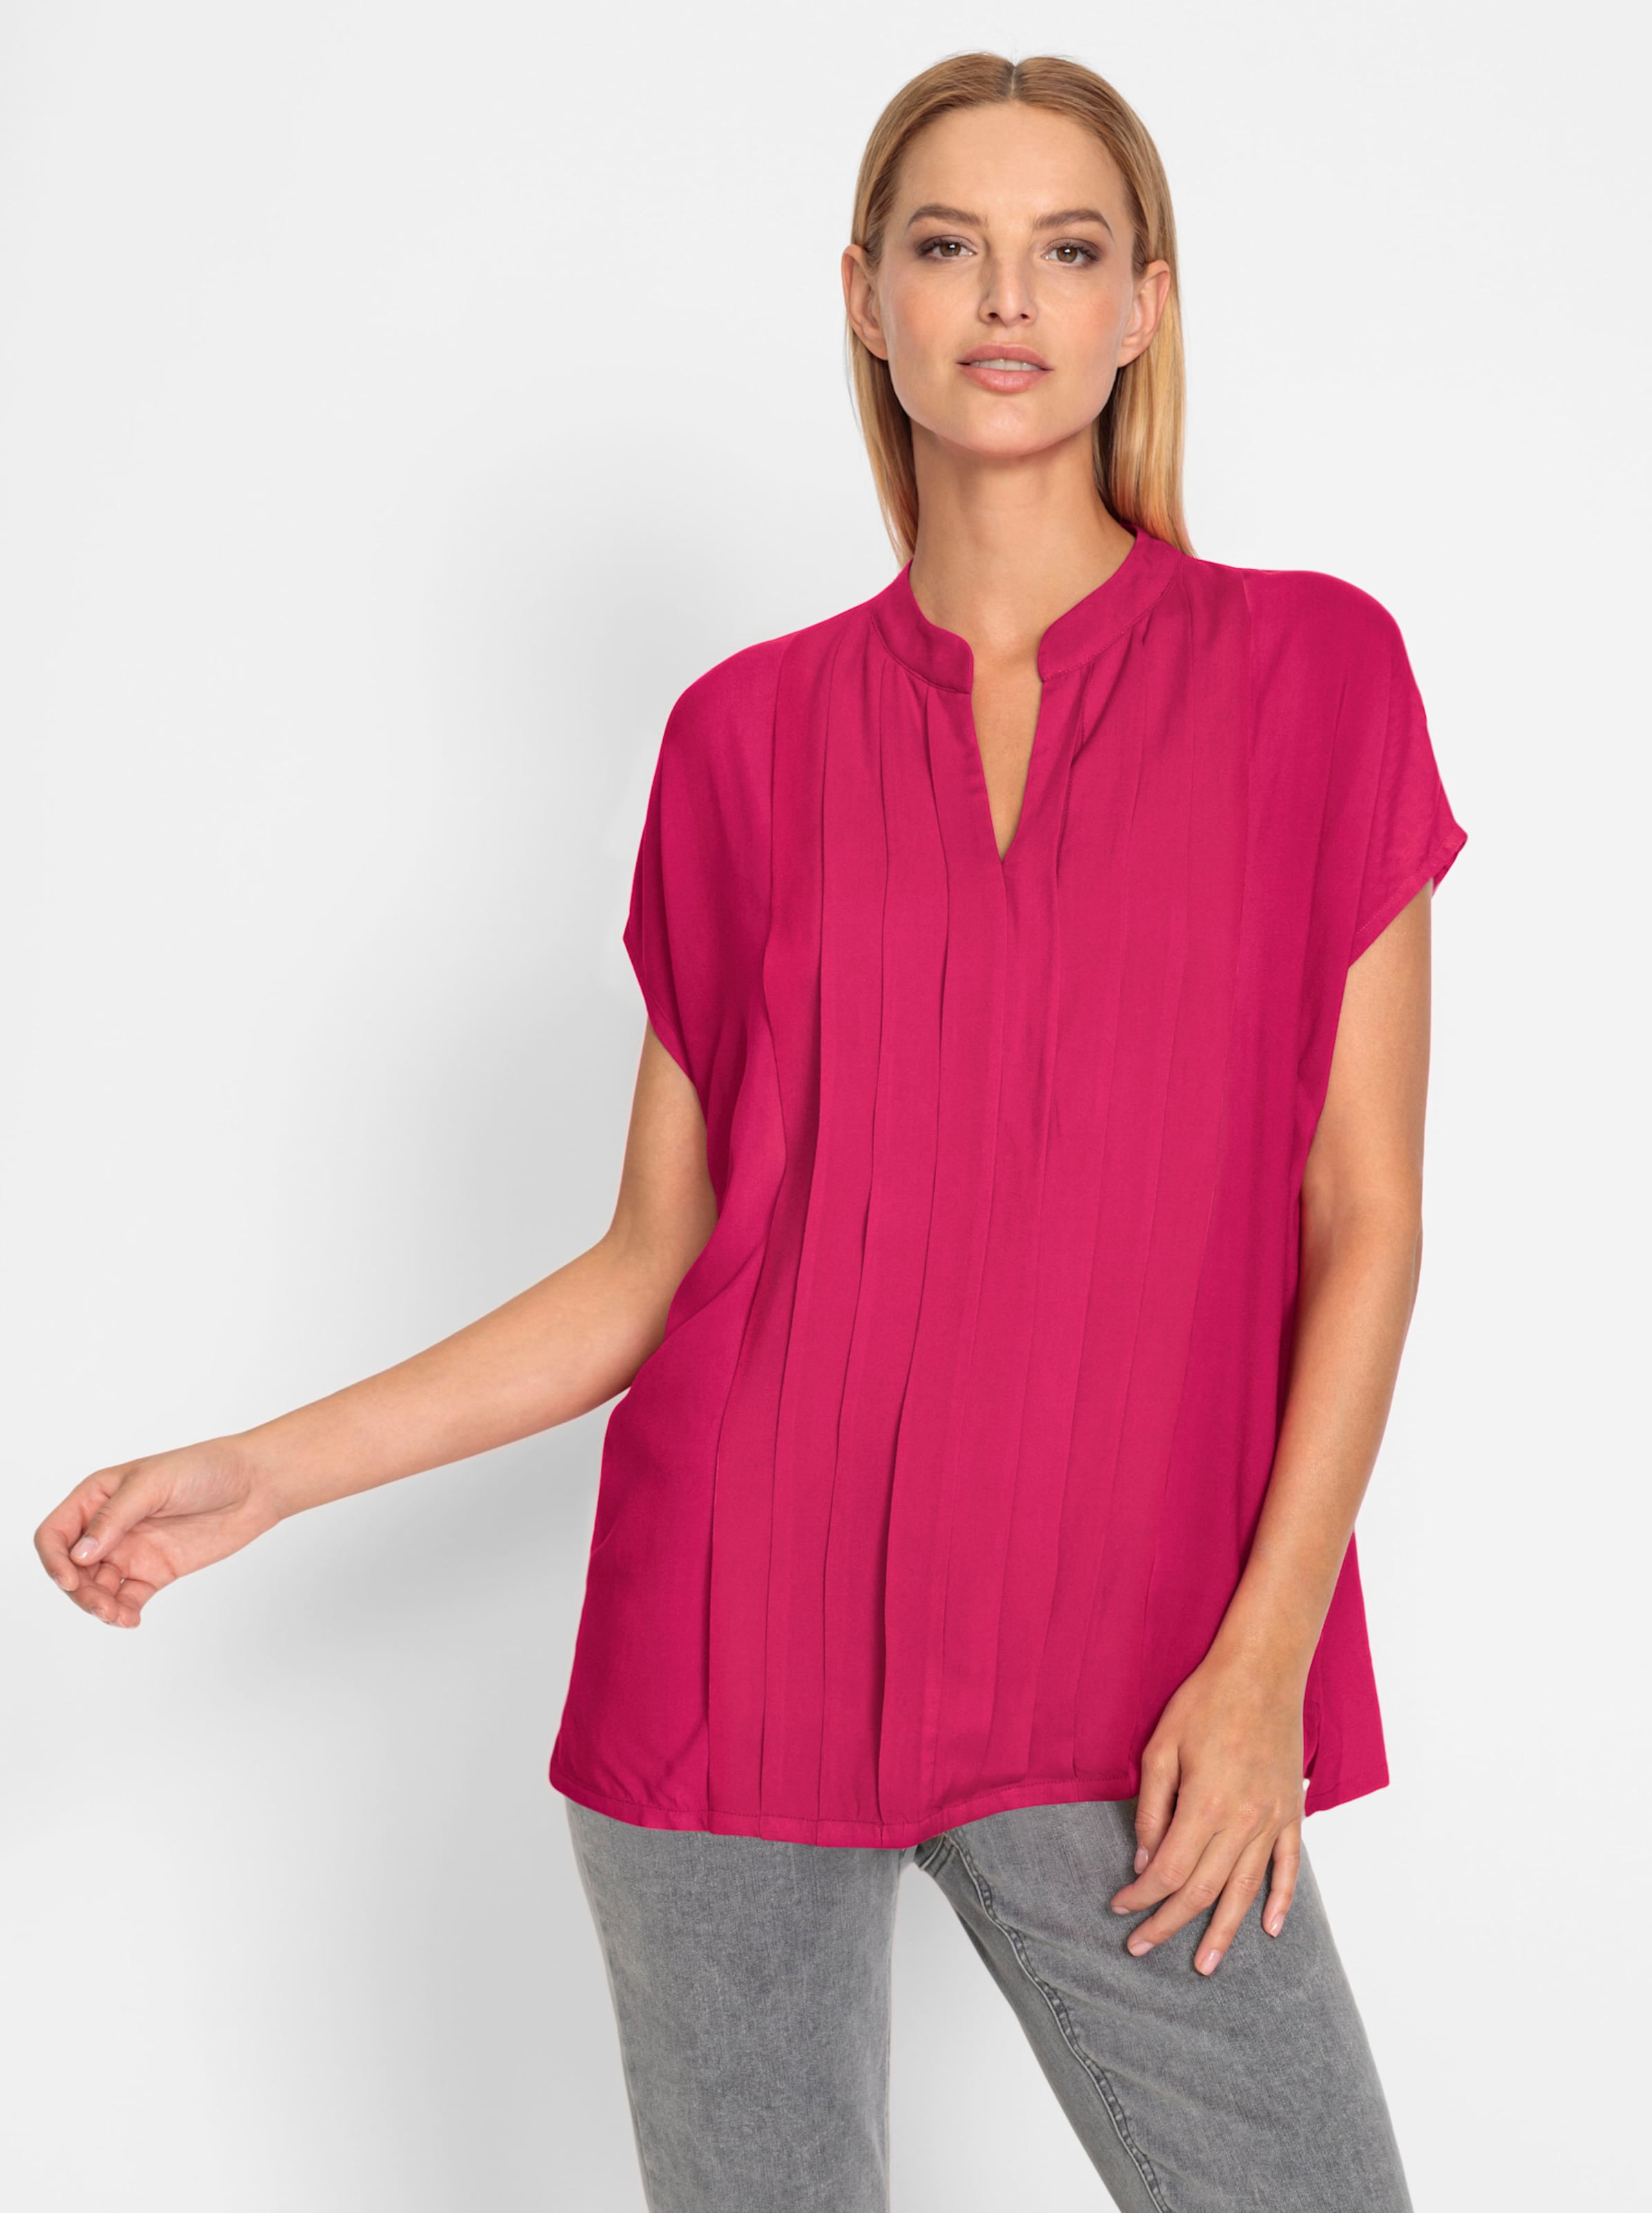 Was eine günstig Kaufen-Bluse in pink von heine. Bluse in pink von heine <![CDATA[Bluse Kurzarm-Style, hinten etwas länger. Rundhals mit offenem V. Mit trendiger Biesenverzierung und Seitenschlitzen.]]>. 